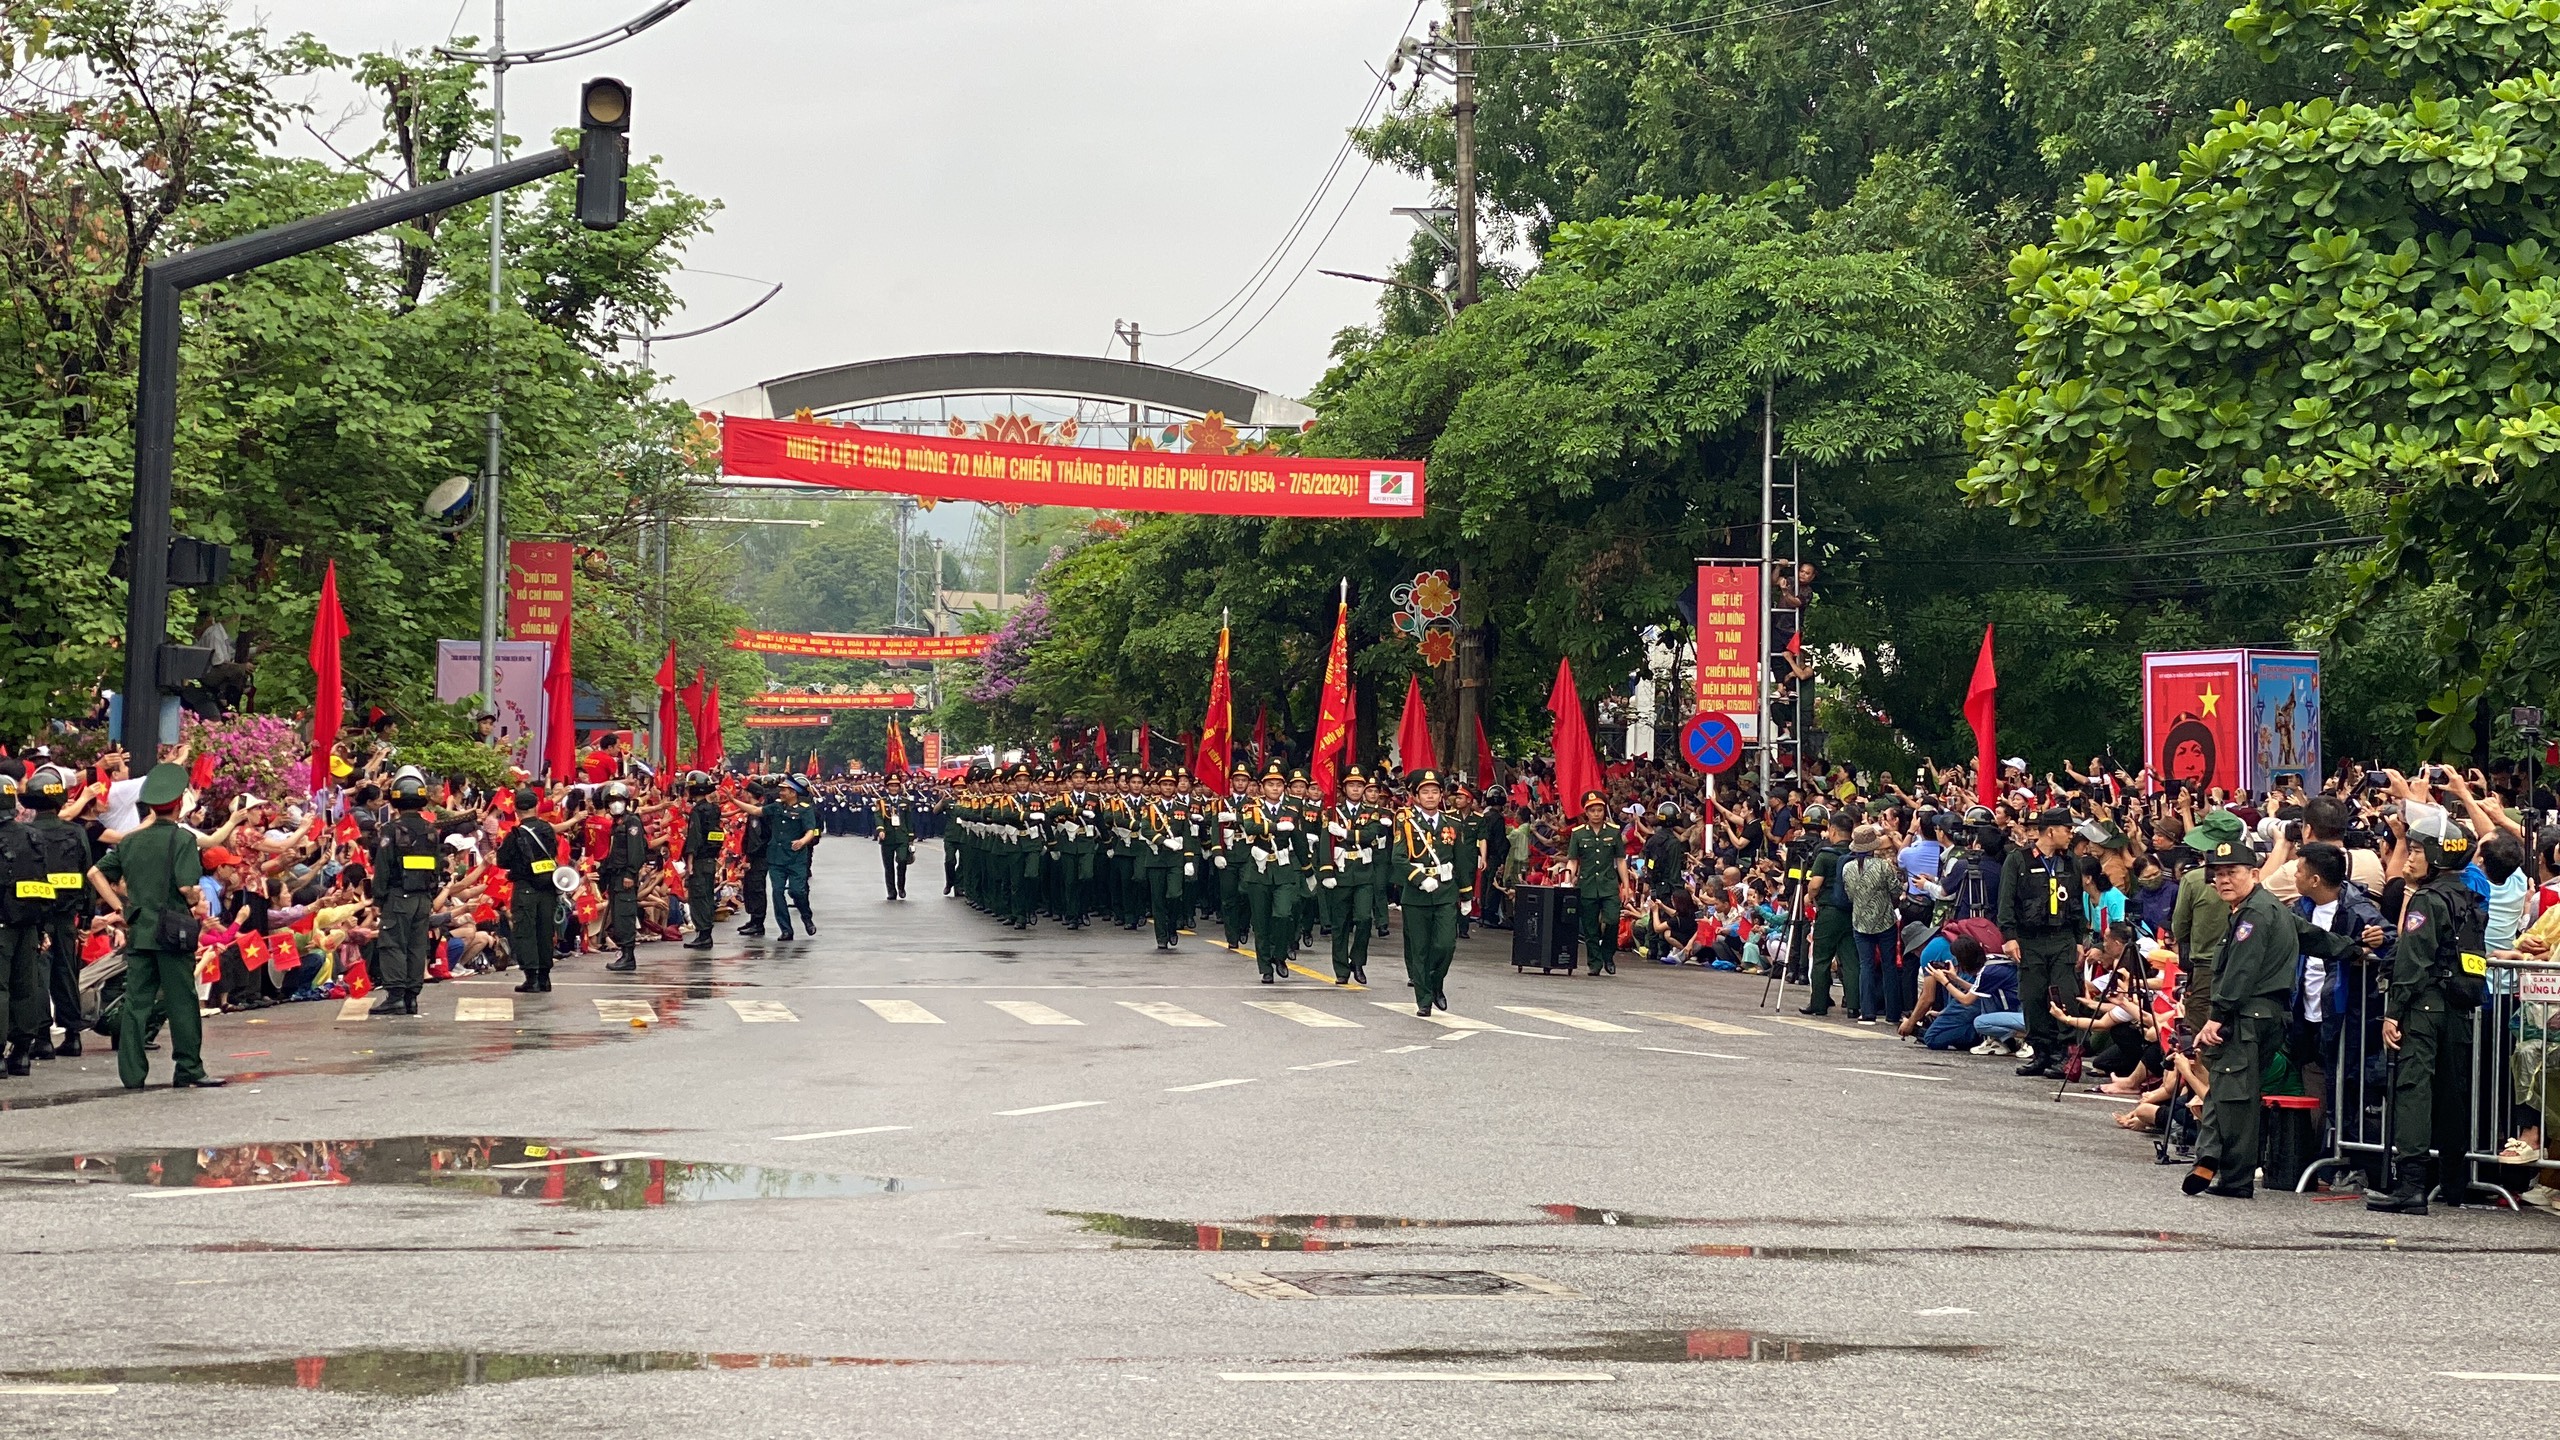 Lễ diễu binh oai hùng và đầy tự hào của 12.000 người - những hình ảnh đi vào lịch sử ở Điện Biên Phủ- Ảnh 1.